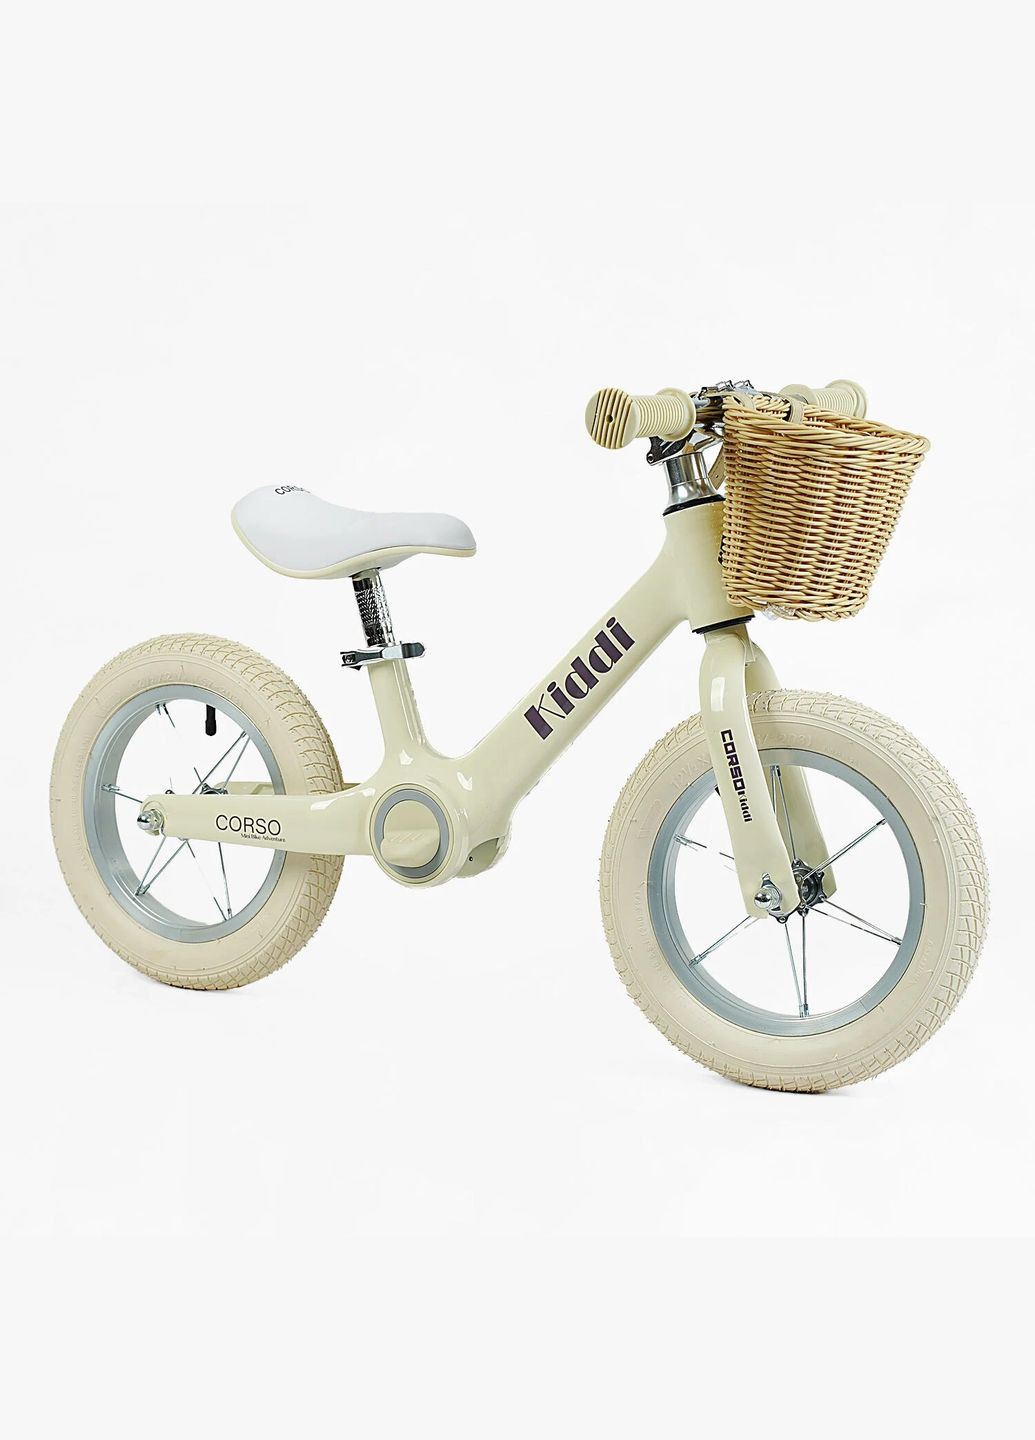 Дитячий велобіг KIDDI ML-12102. Магнієва рама, надувні колеса 12", підставка для ніг, кошик Corso (290254826)